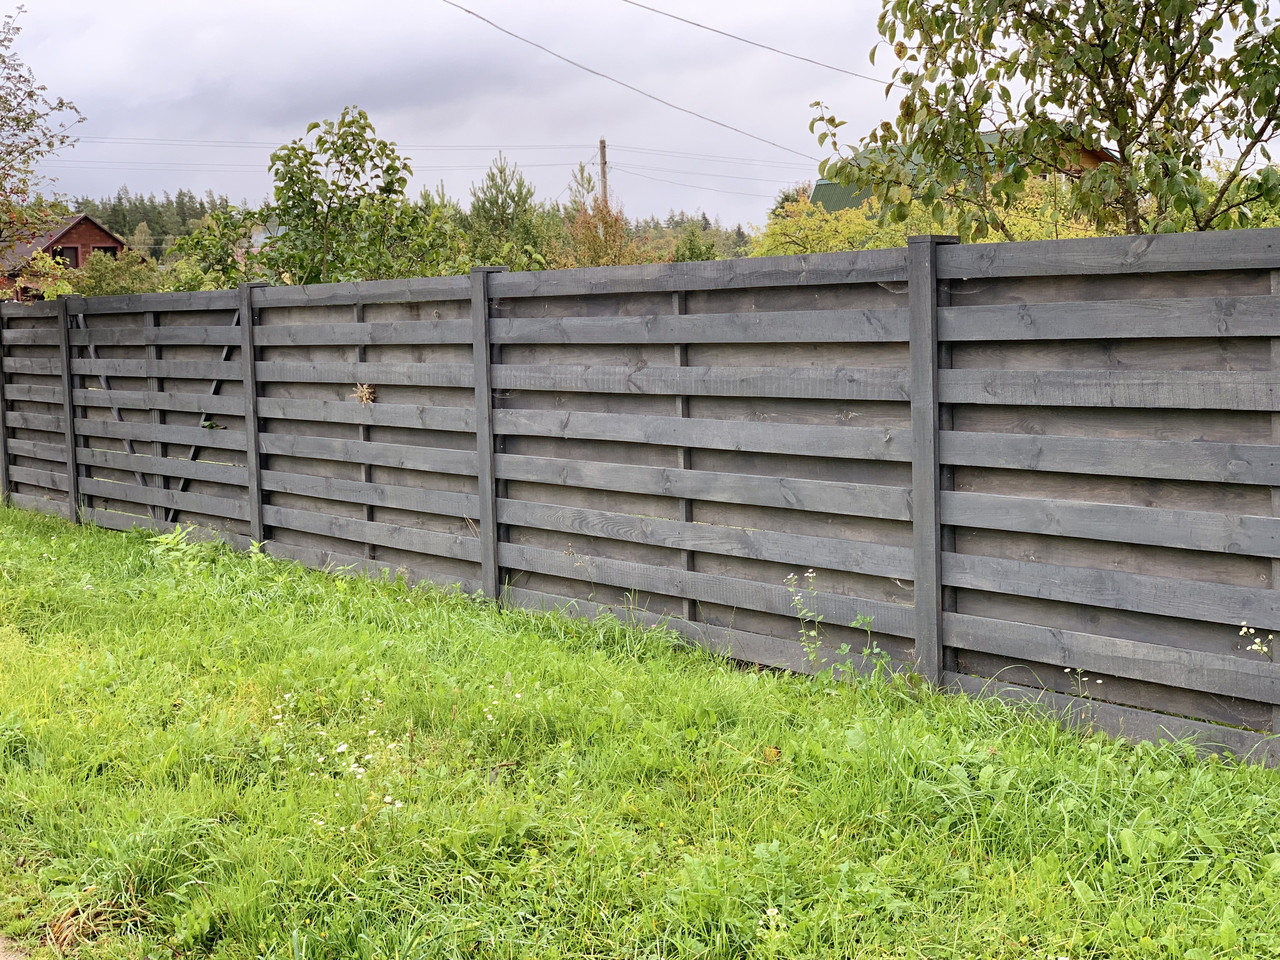 Забор деревянный, фото 1